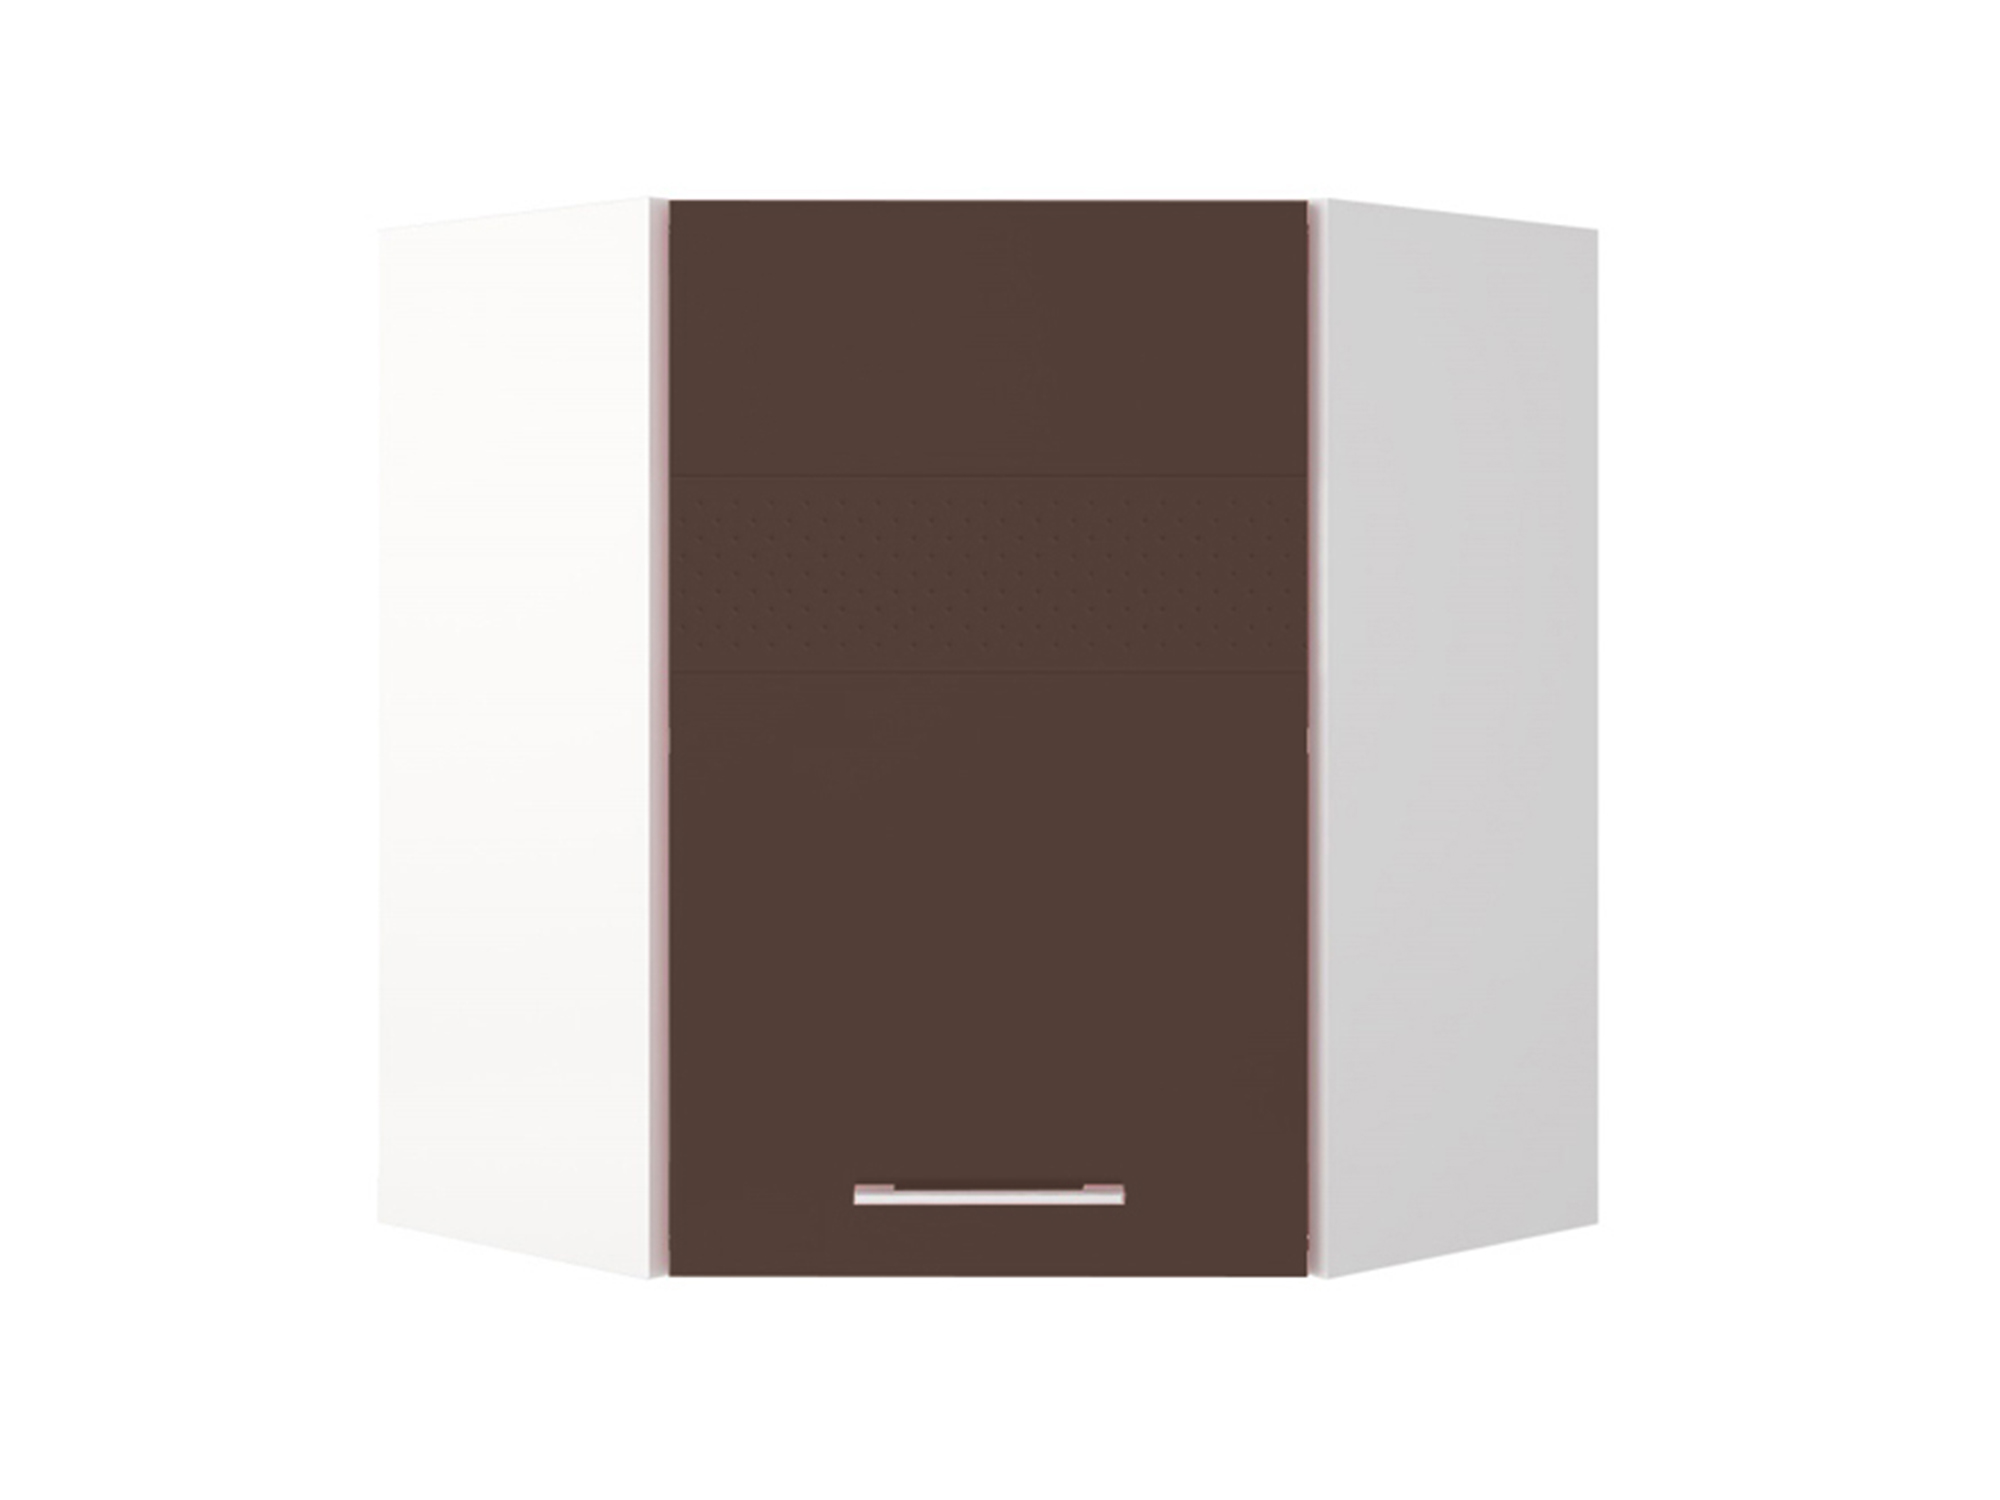 шкаф для одежды berlin шоколад глянец коричневый темный бежевый мдф лдсп Шкаф навесной угловой Люкс Шоколад глянец, , Коричневый темный, Белый, МДФ, ПВХ, ЛДСП